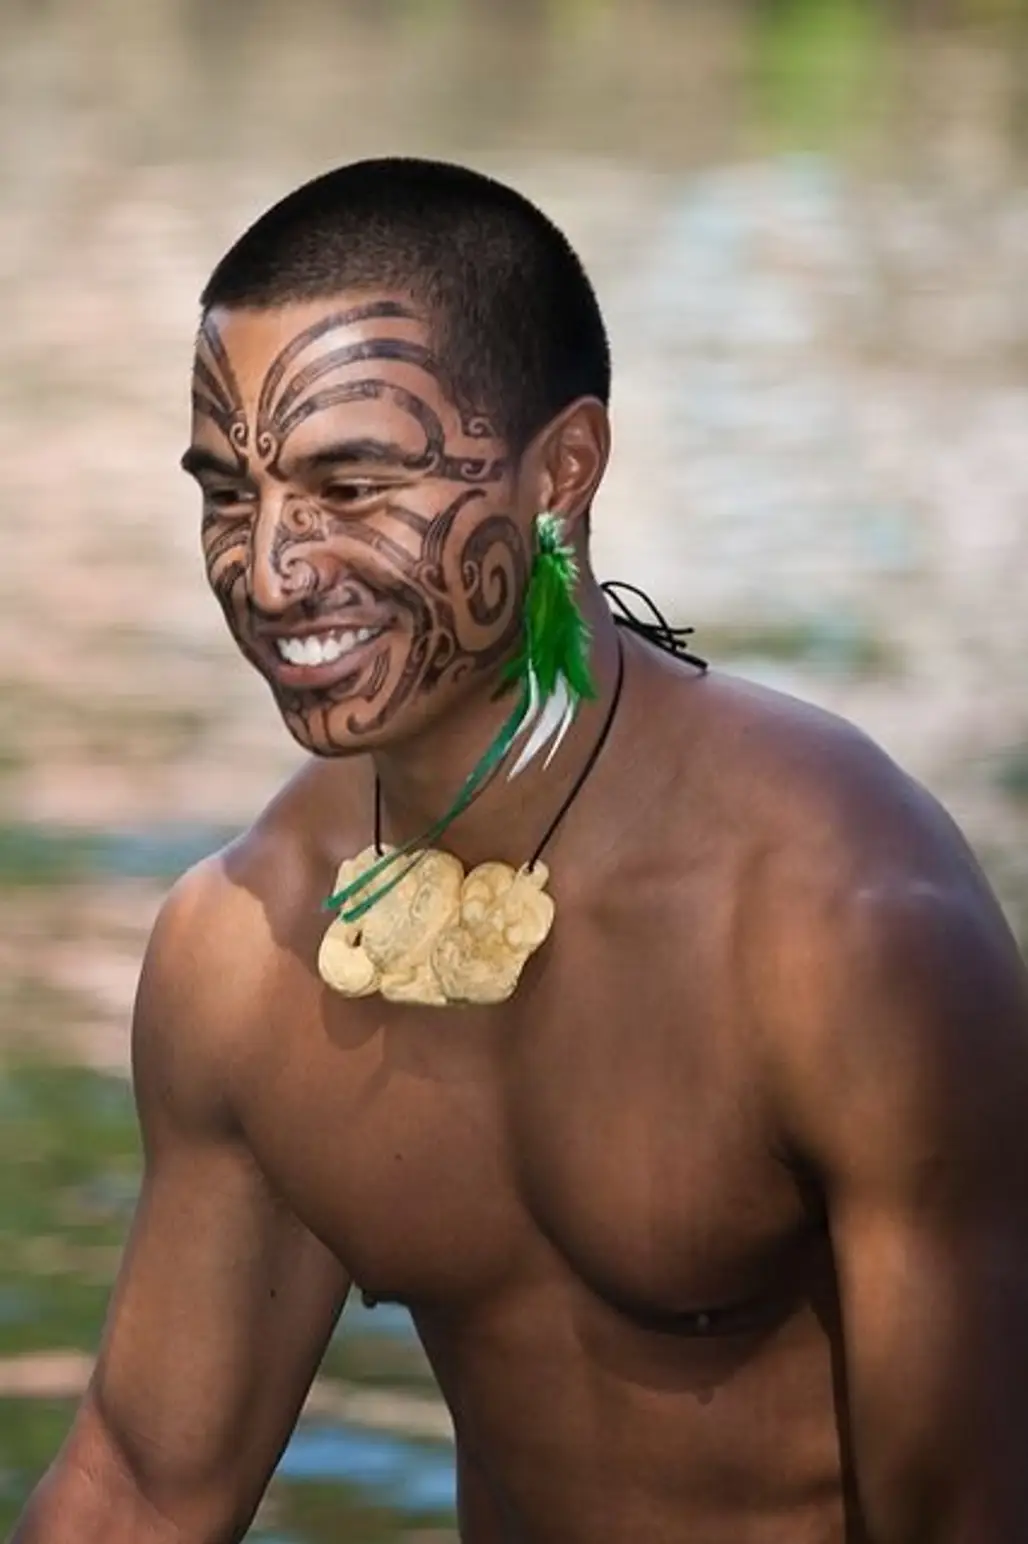 Polynesian Dancer